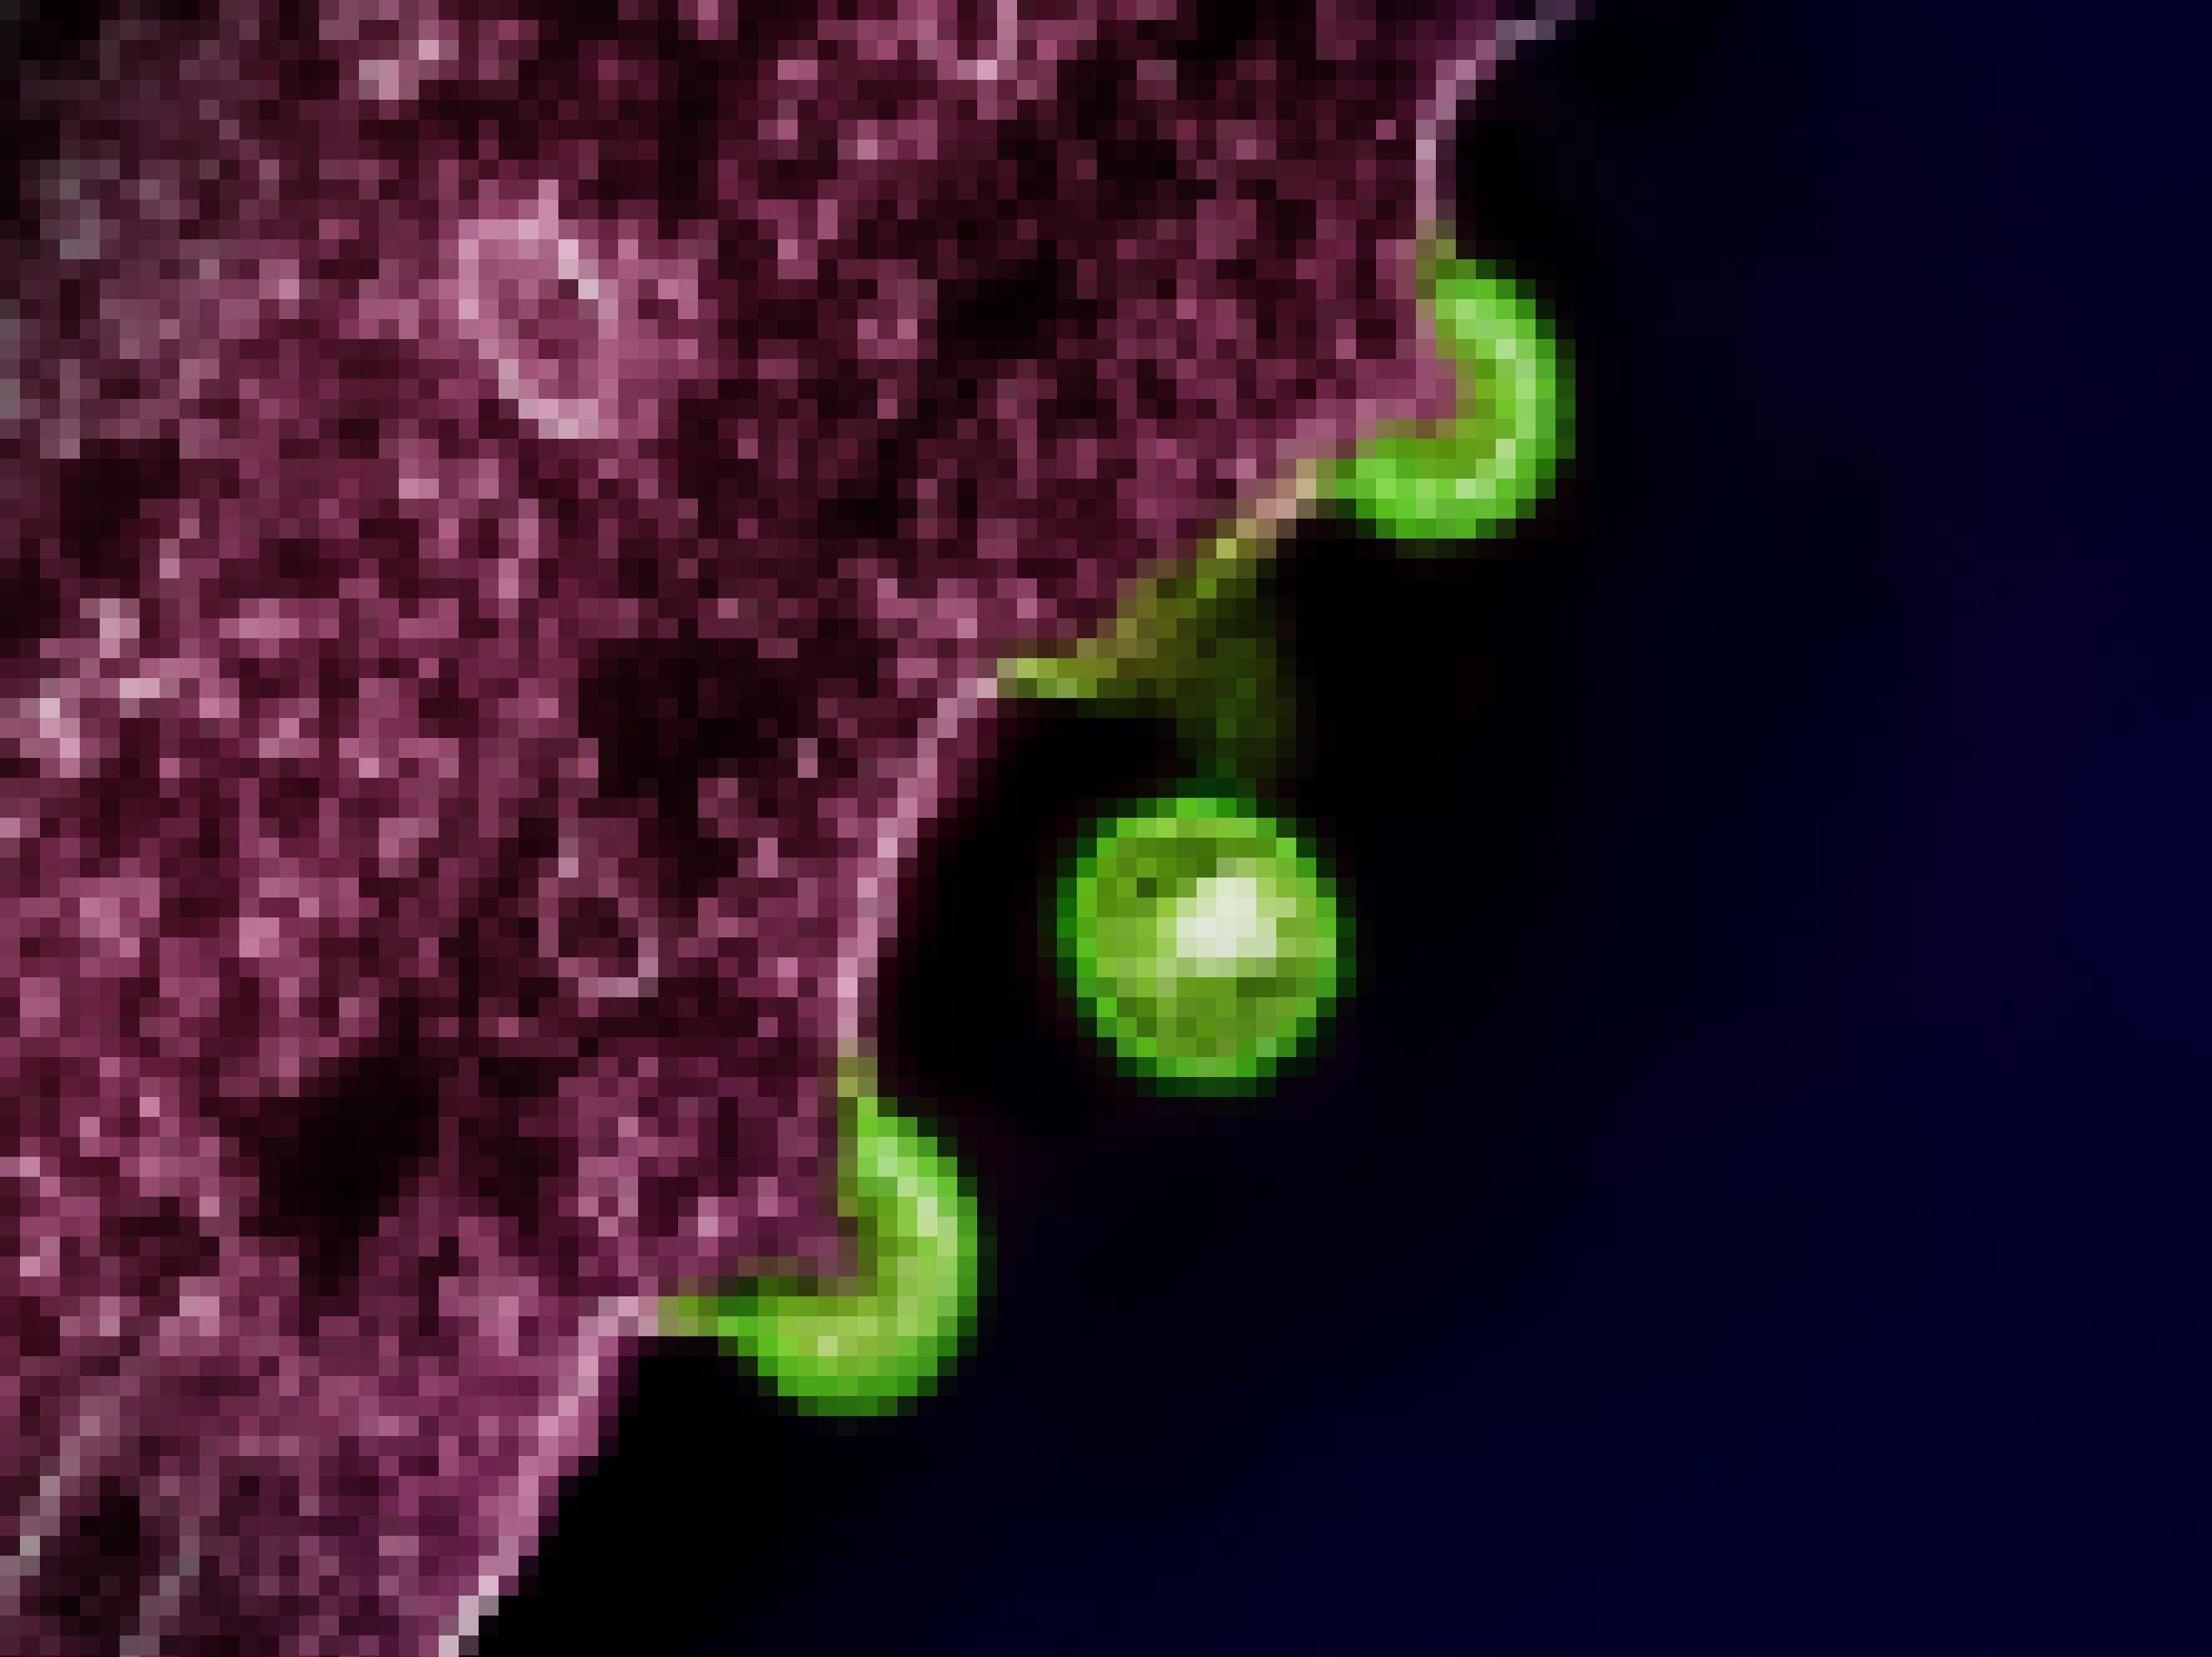 Elektronenmikroskopische Aufnahme von HIV-Partikeln (grün gefärbt), die von einer infizierten Zelle (violett) freigesetzt werden.